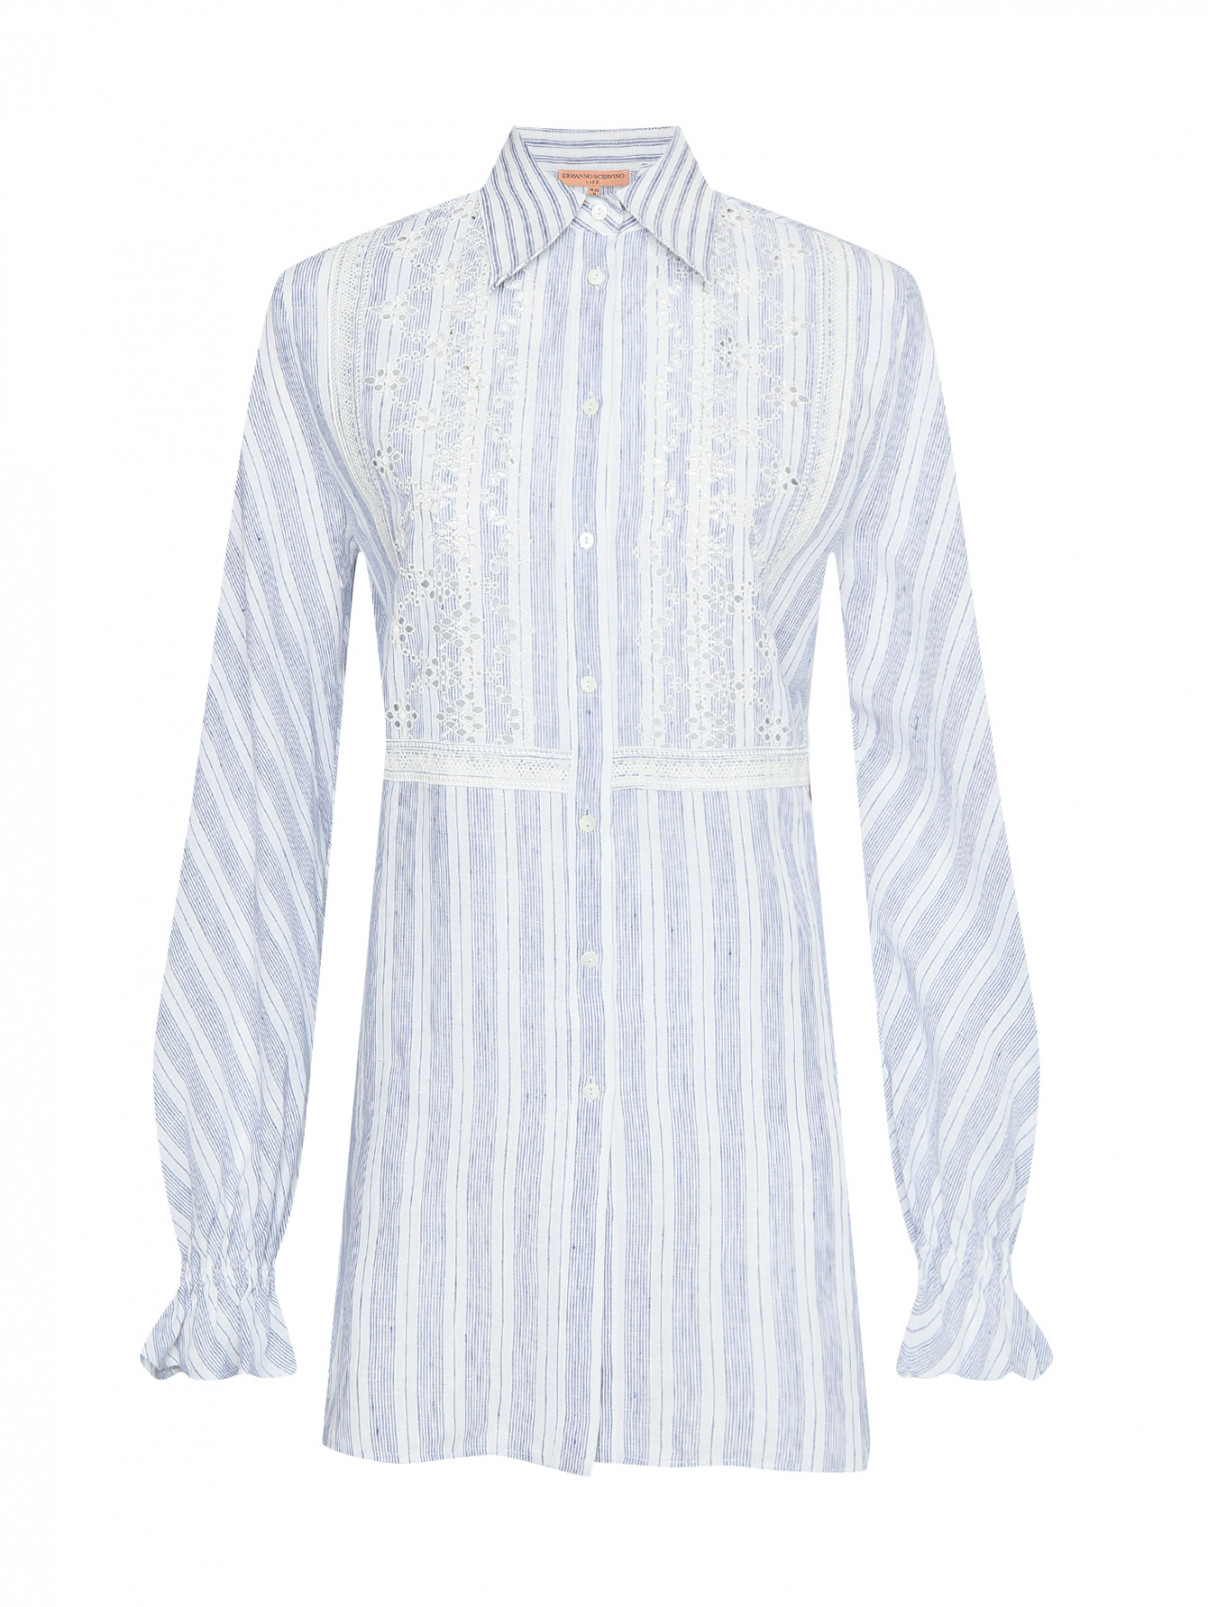 Блуза из льна в полоску Ermanno Scervino  –  Общий вид  – Цвет:  Белый